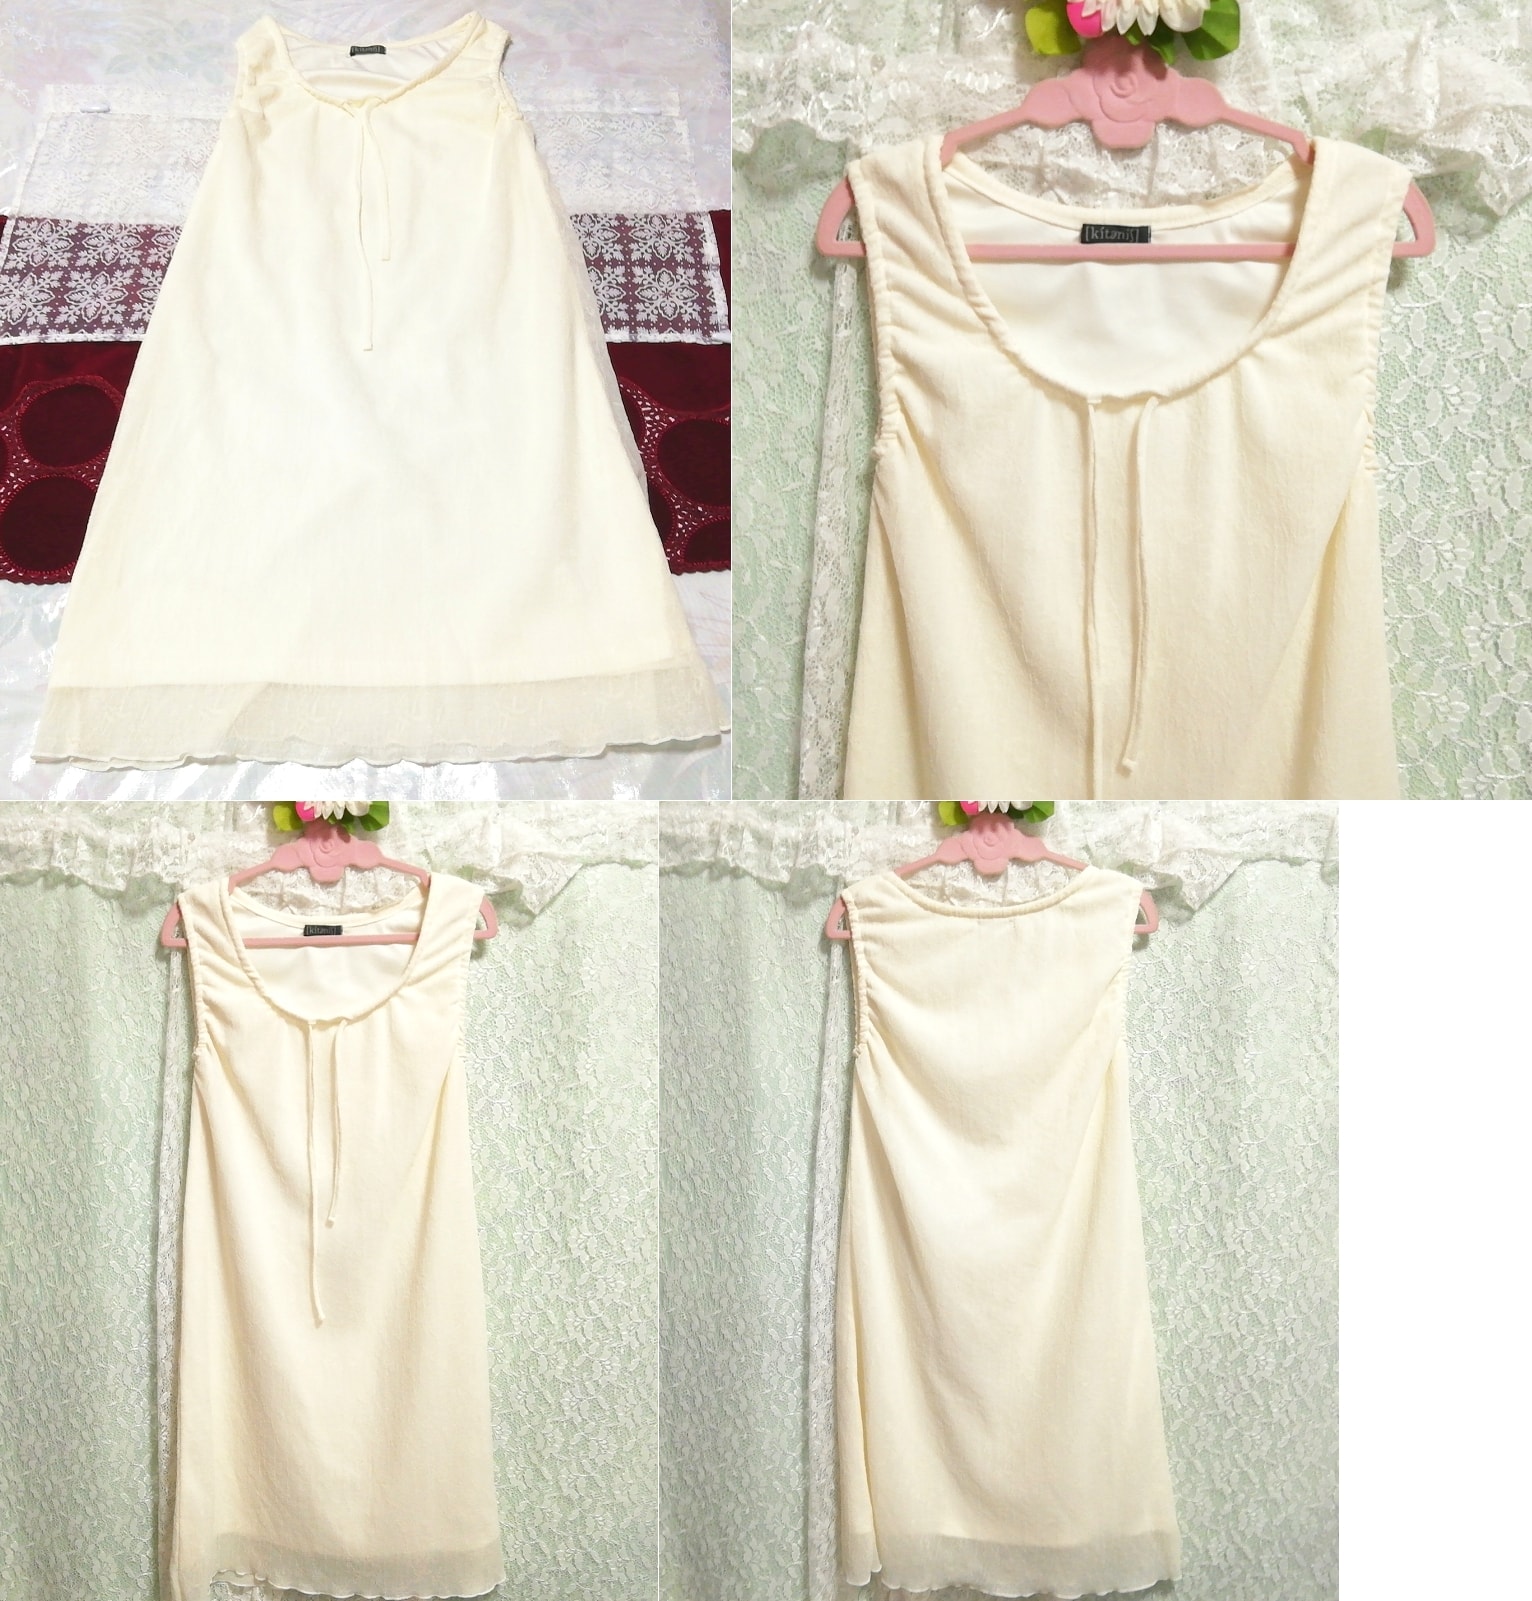 فستان نوم من الدانتيل الأبيض بدون أكمام من الدانتيل الزهري, تنورة بطول الركبة, حجم م